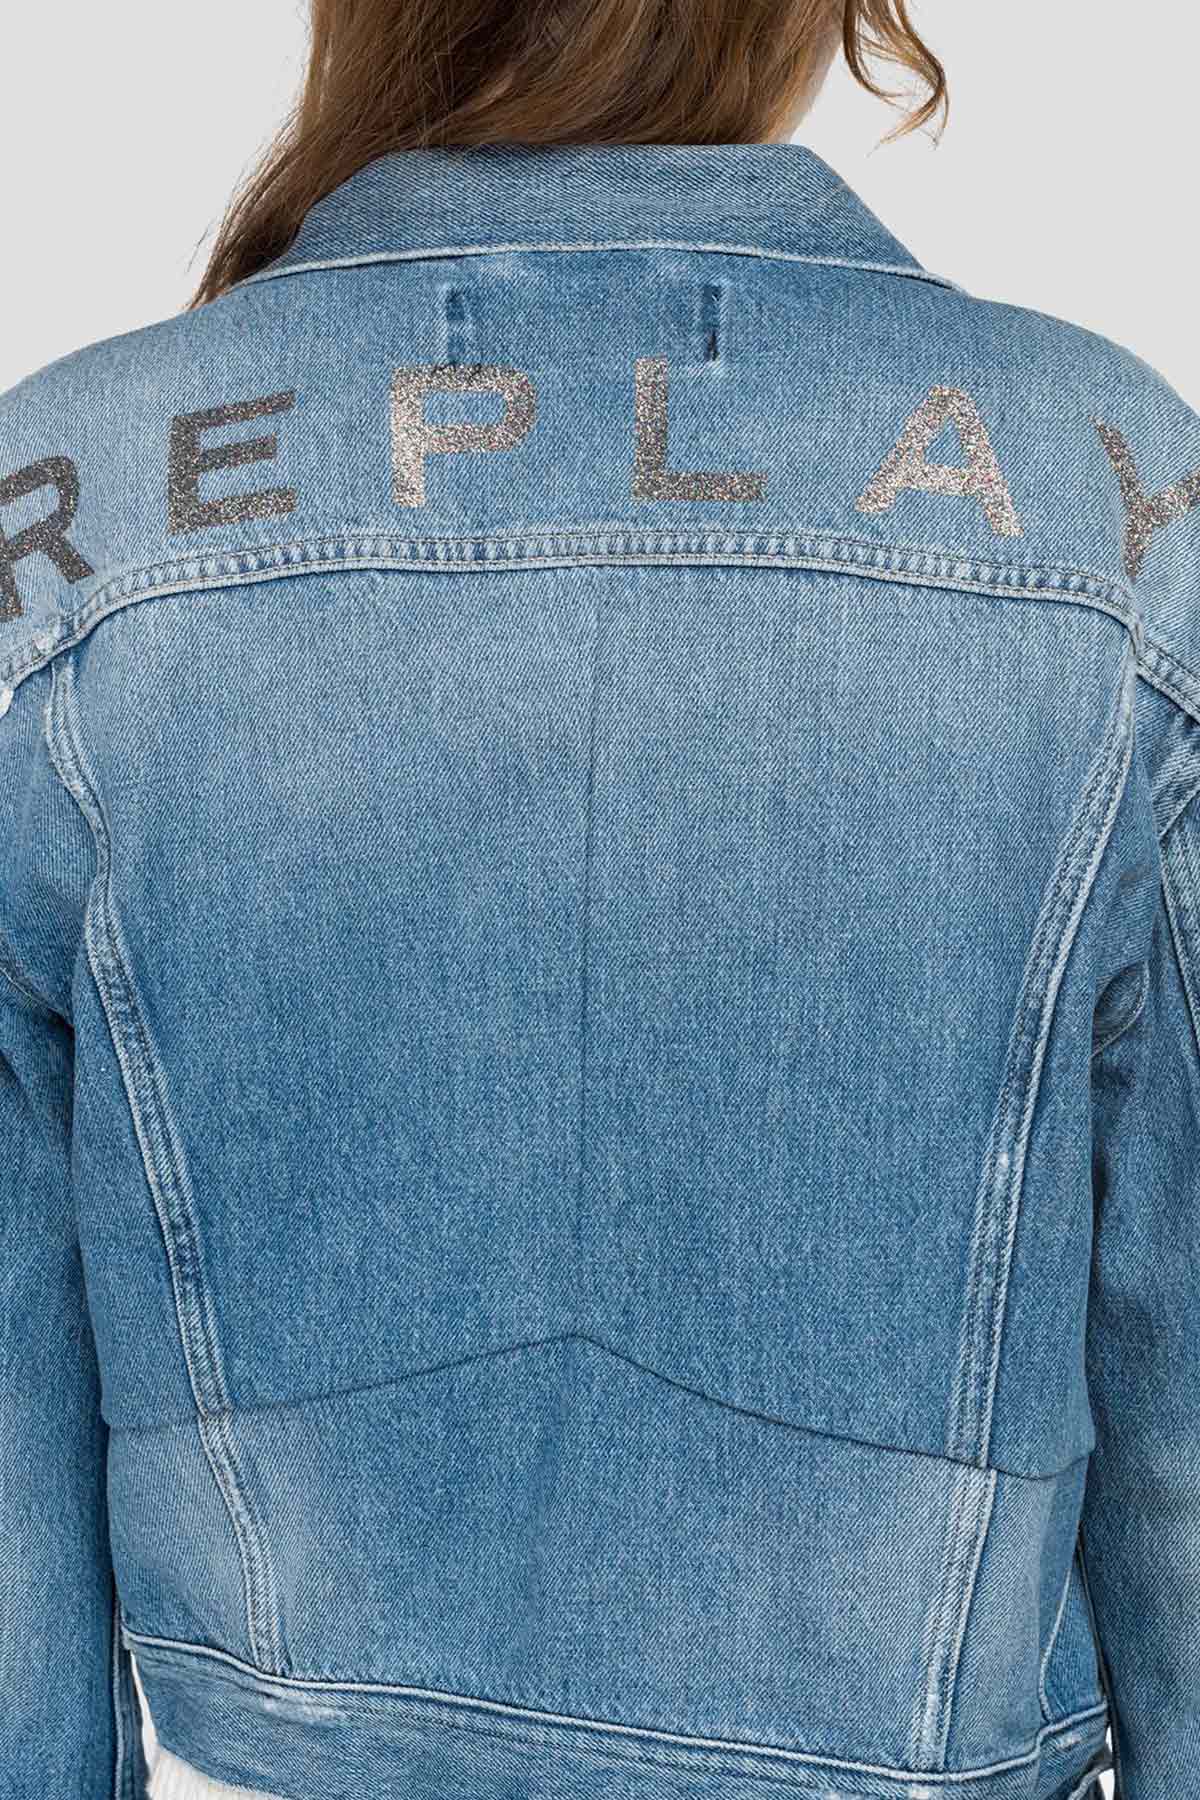 Replay Denim Ceket-Libas Trendy Fashion Store